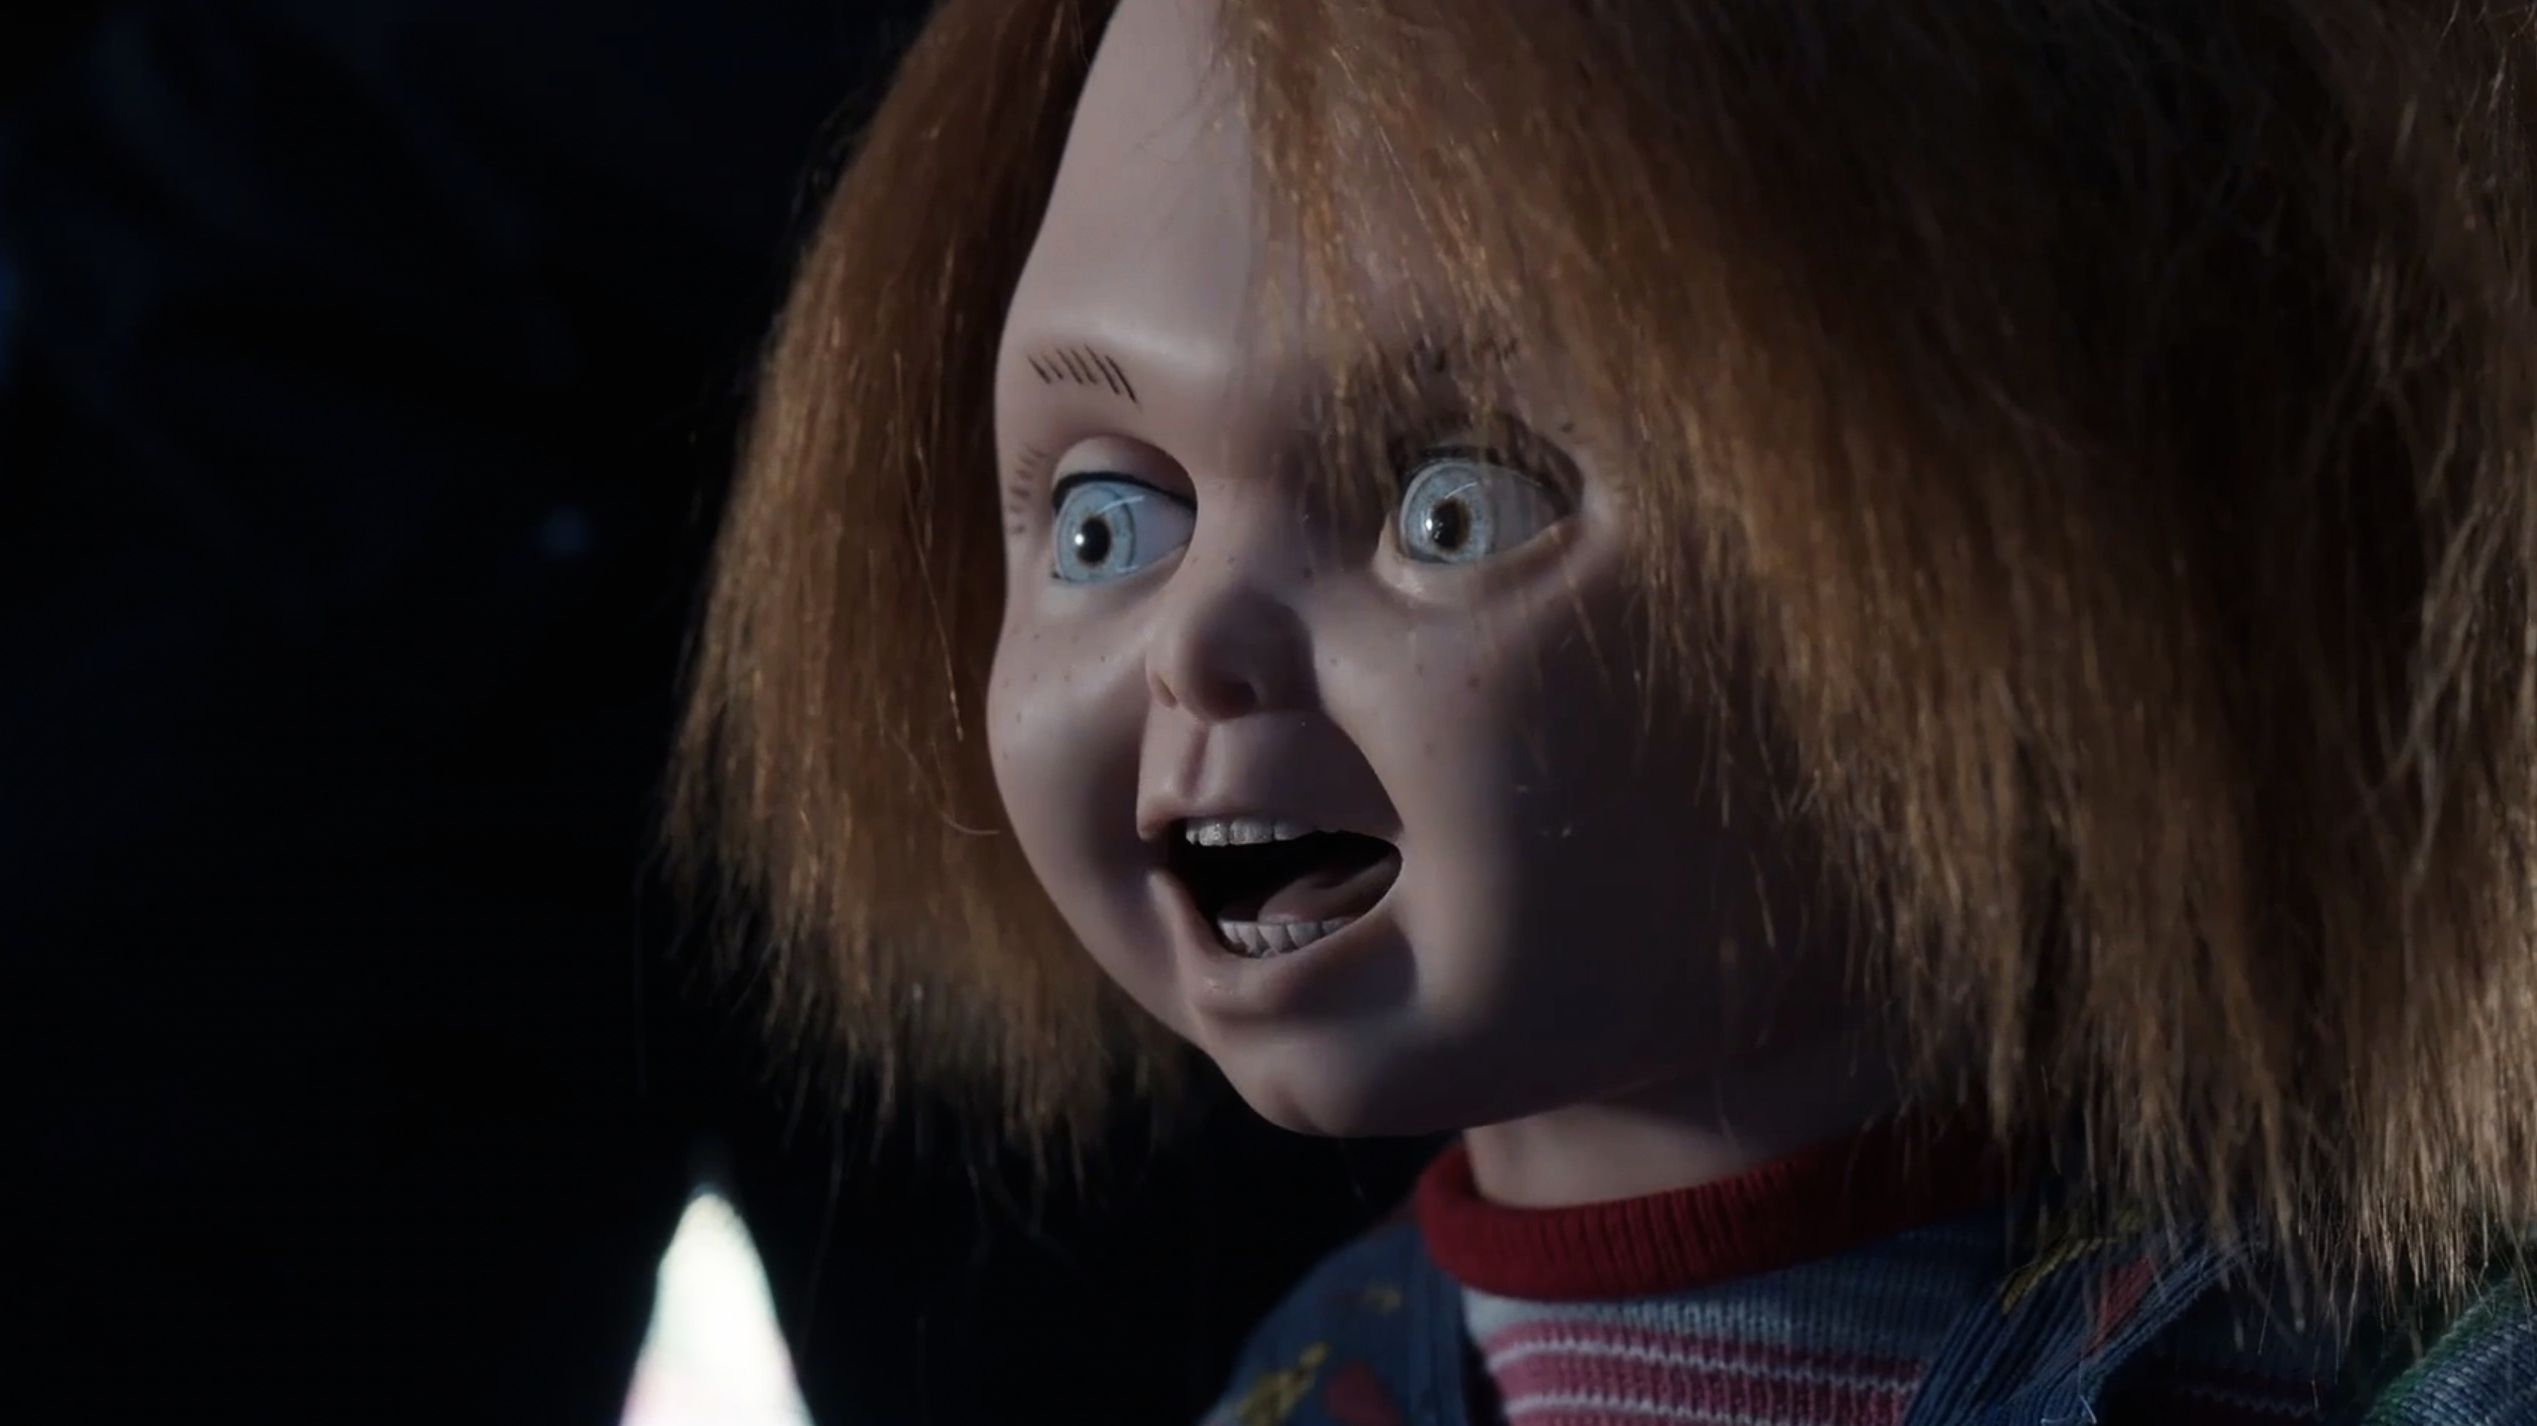 La temporada 2 de “Chucky” llegó a Star+: ¿qué se verá en la continuación?